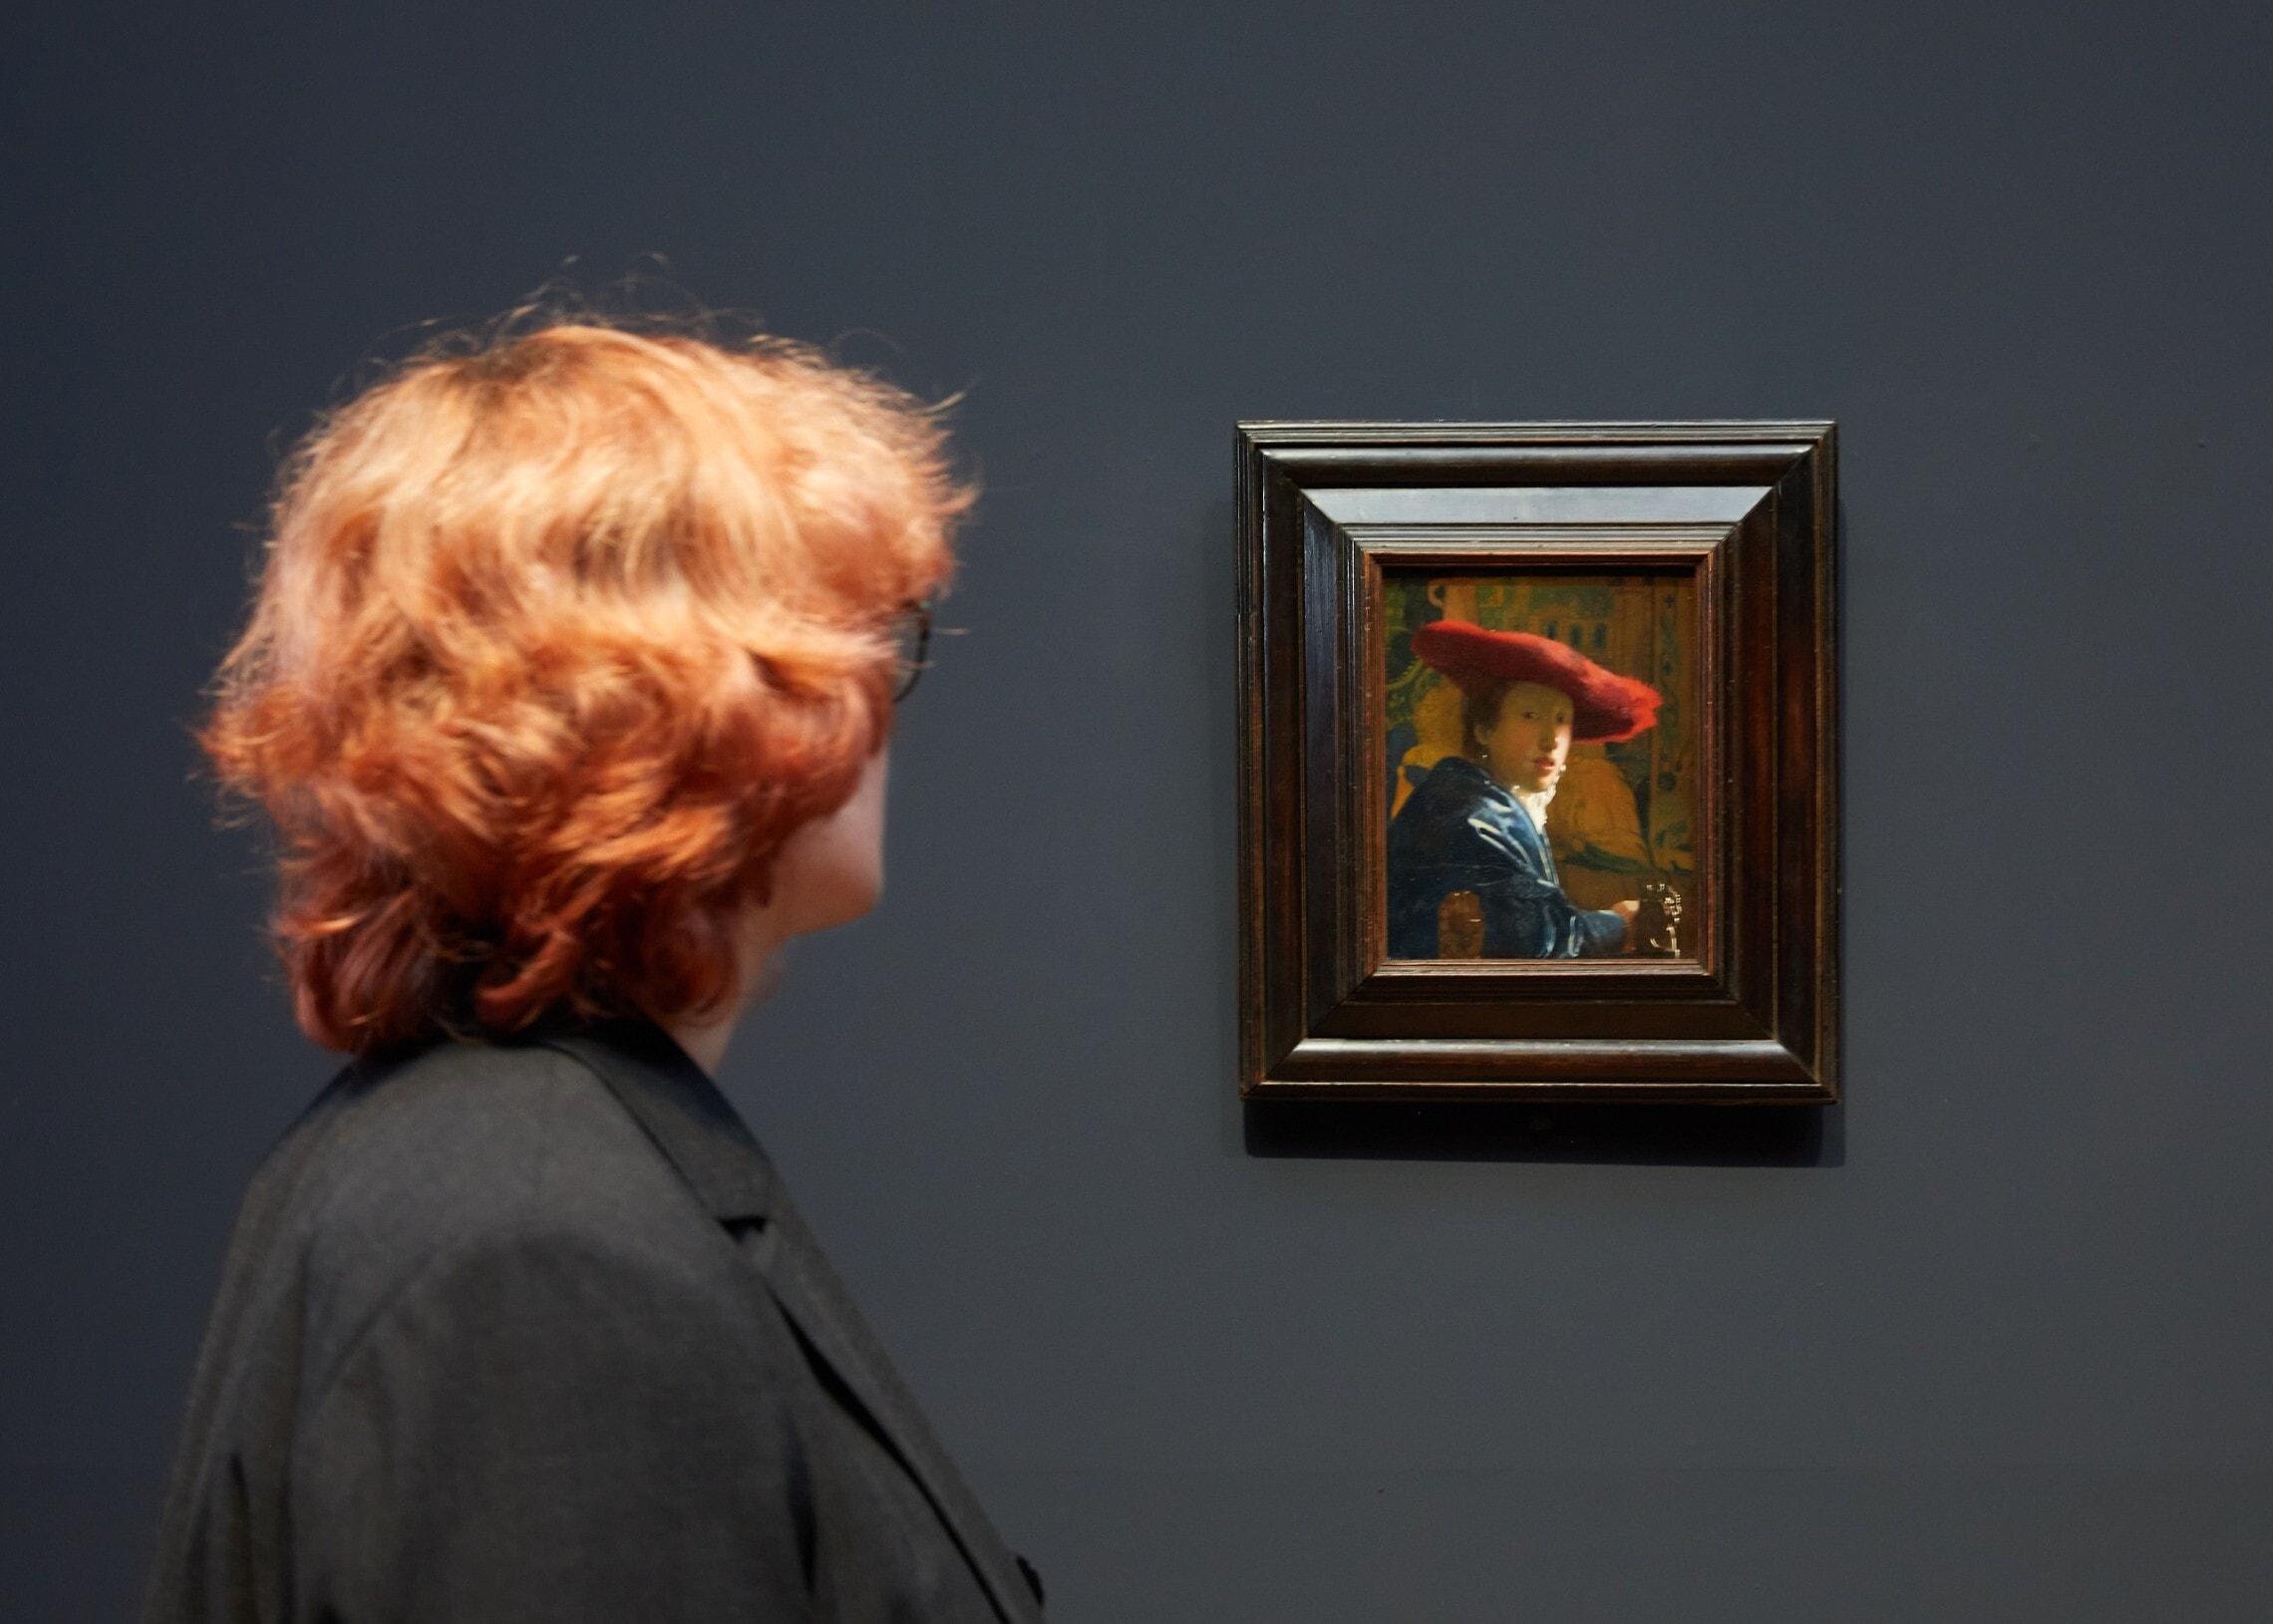 אישה בתערוכה של יאן ורמיר במוזיאון הרייקס, אמסטרדם, הולנד (צילום: Rijksmuseum/ Henk Wildschut)